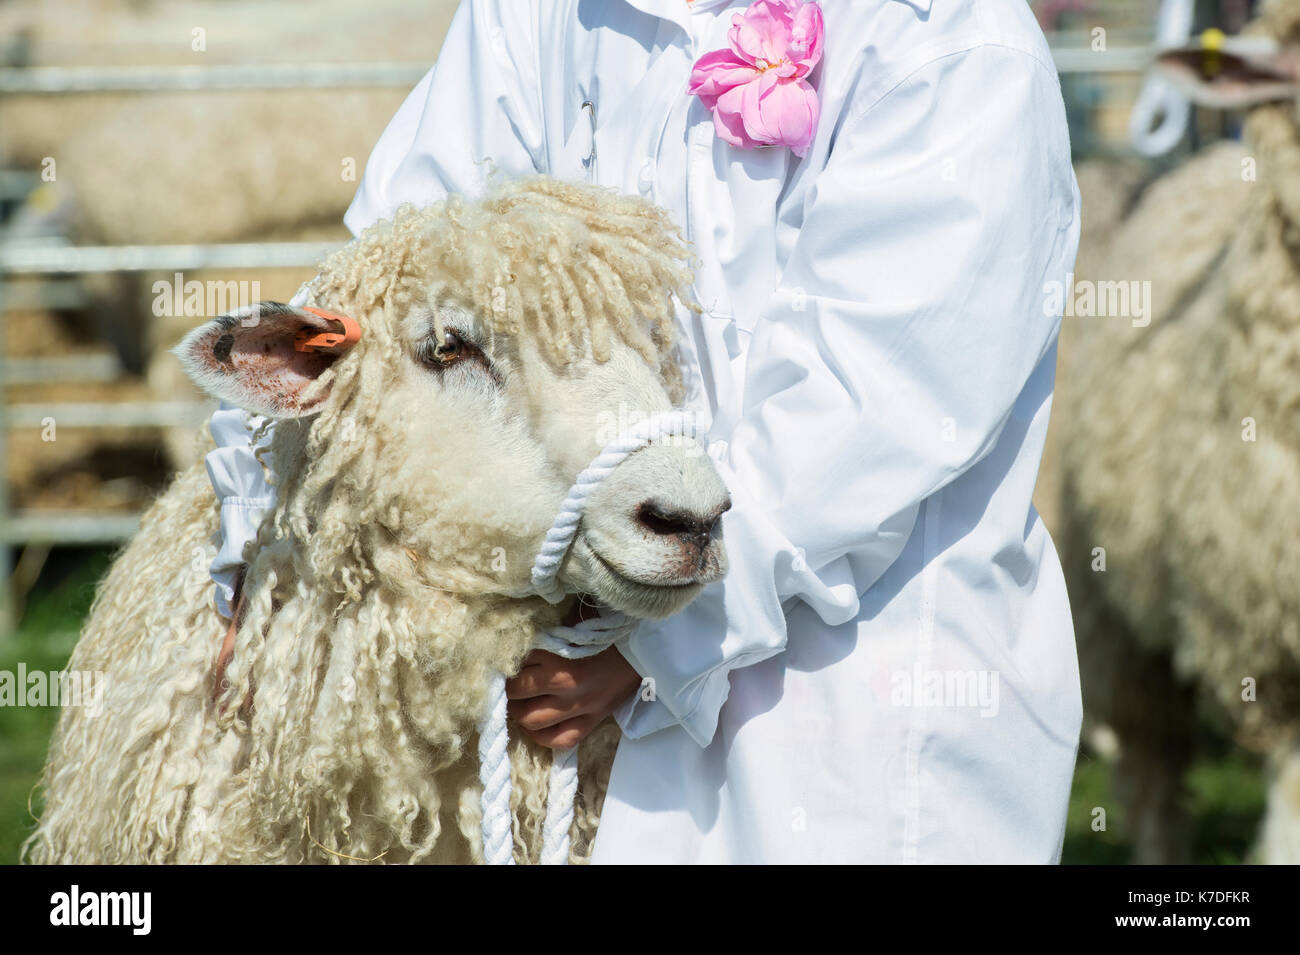 Jeune fille montrant un mouton à Cotswold country show Henley, Oxfordshire, UK Banque D'Images